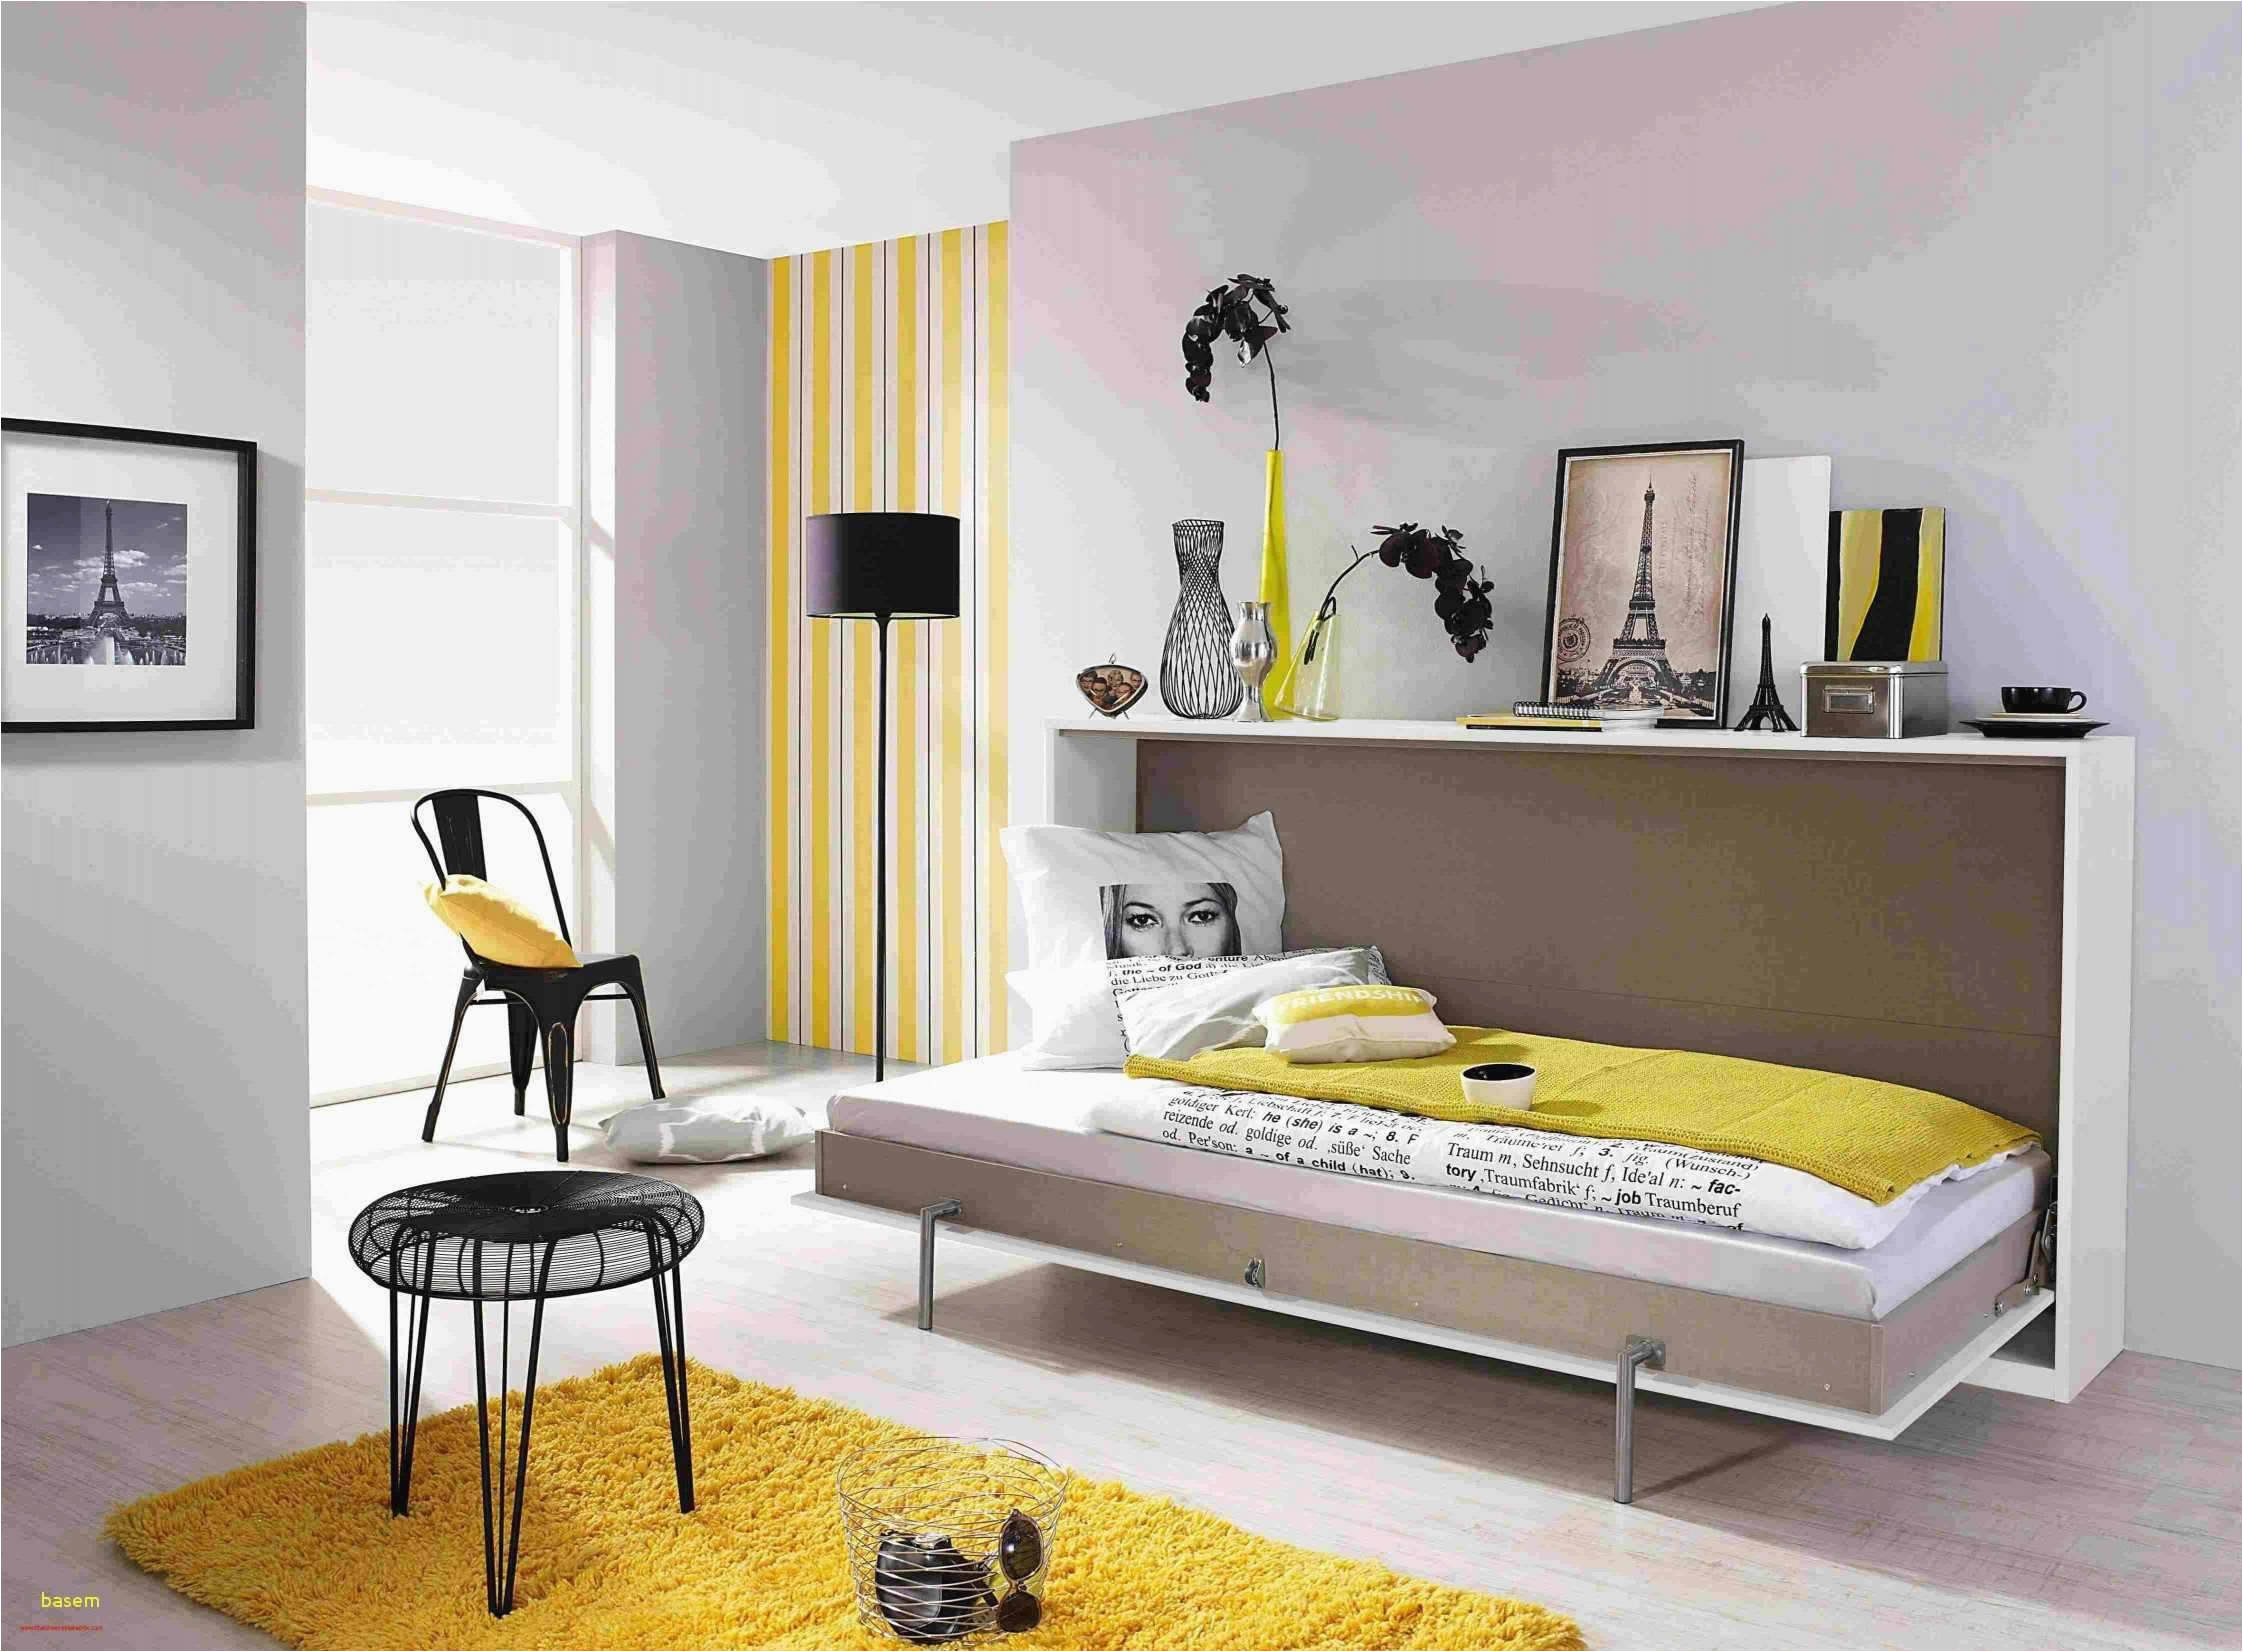 Geeignete Farben Für Schlafzimmer 27 Frisch Farben Für Wohnzimmer Elegant